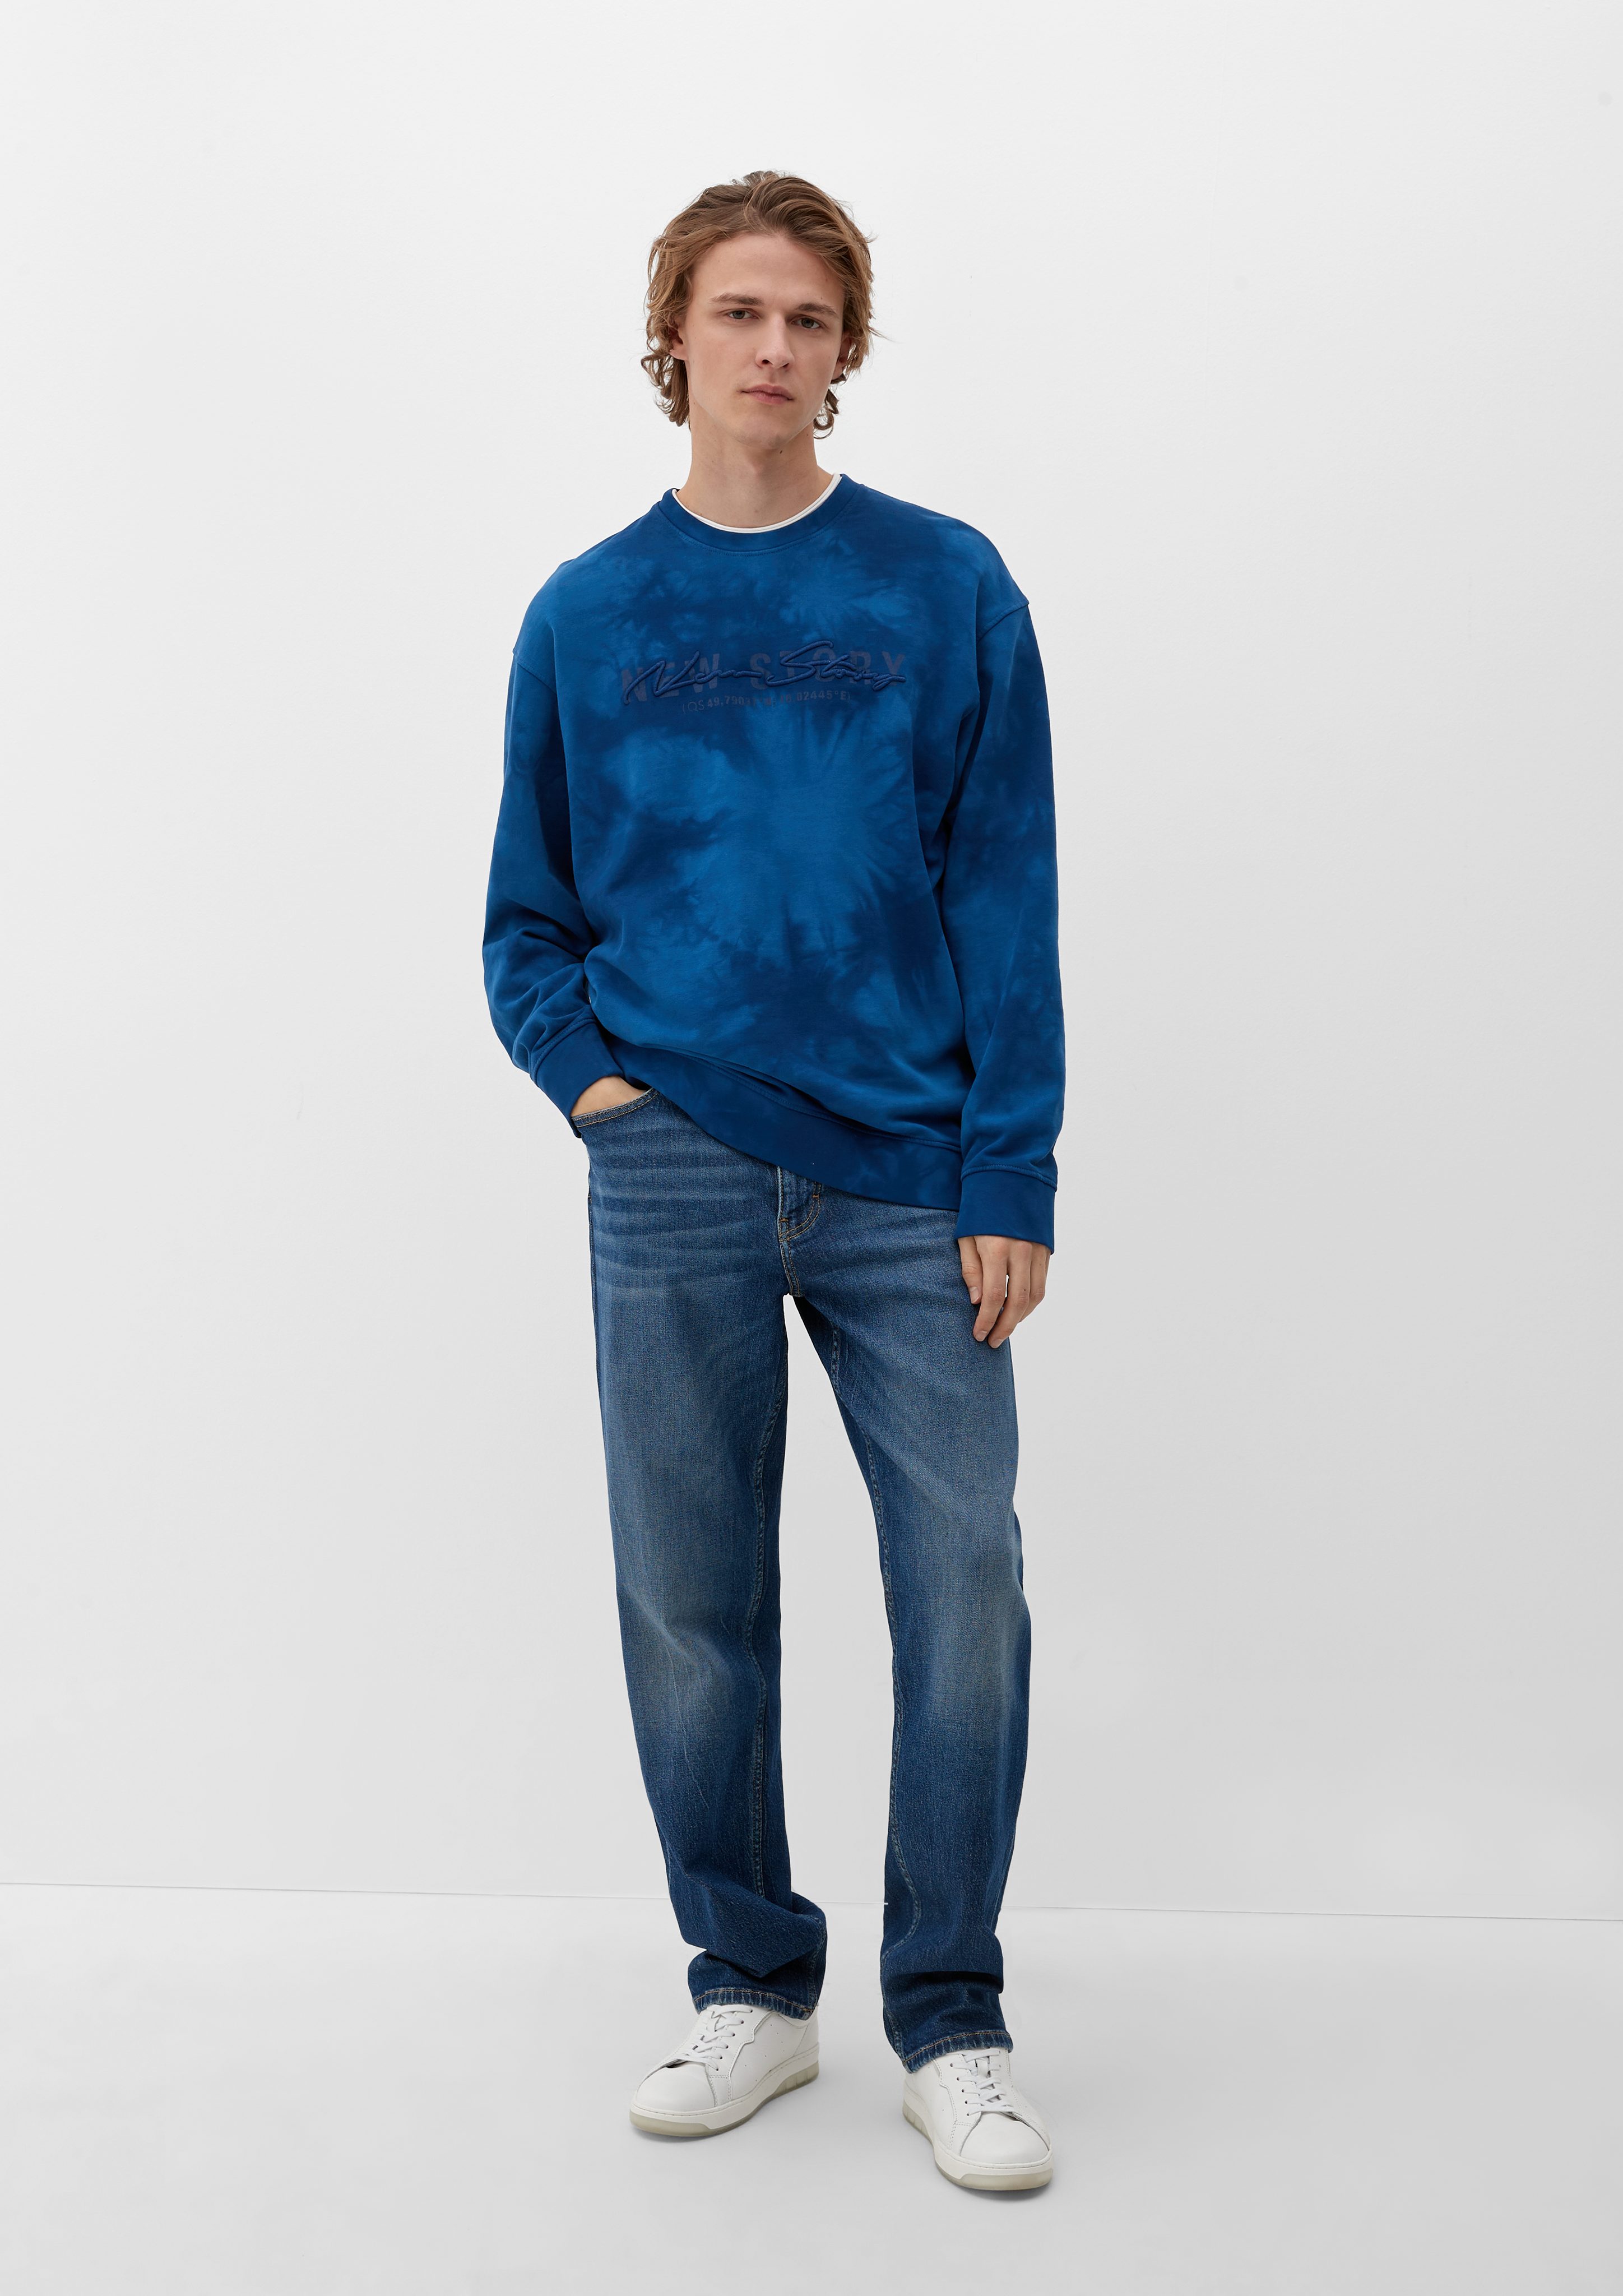 Sweatshirt Stickerei Batik-Optik Sweatshirt ozeanblau QS in